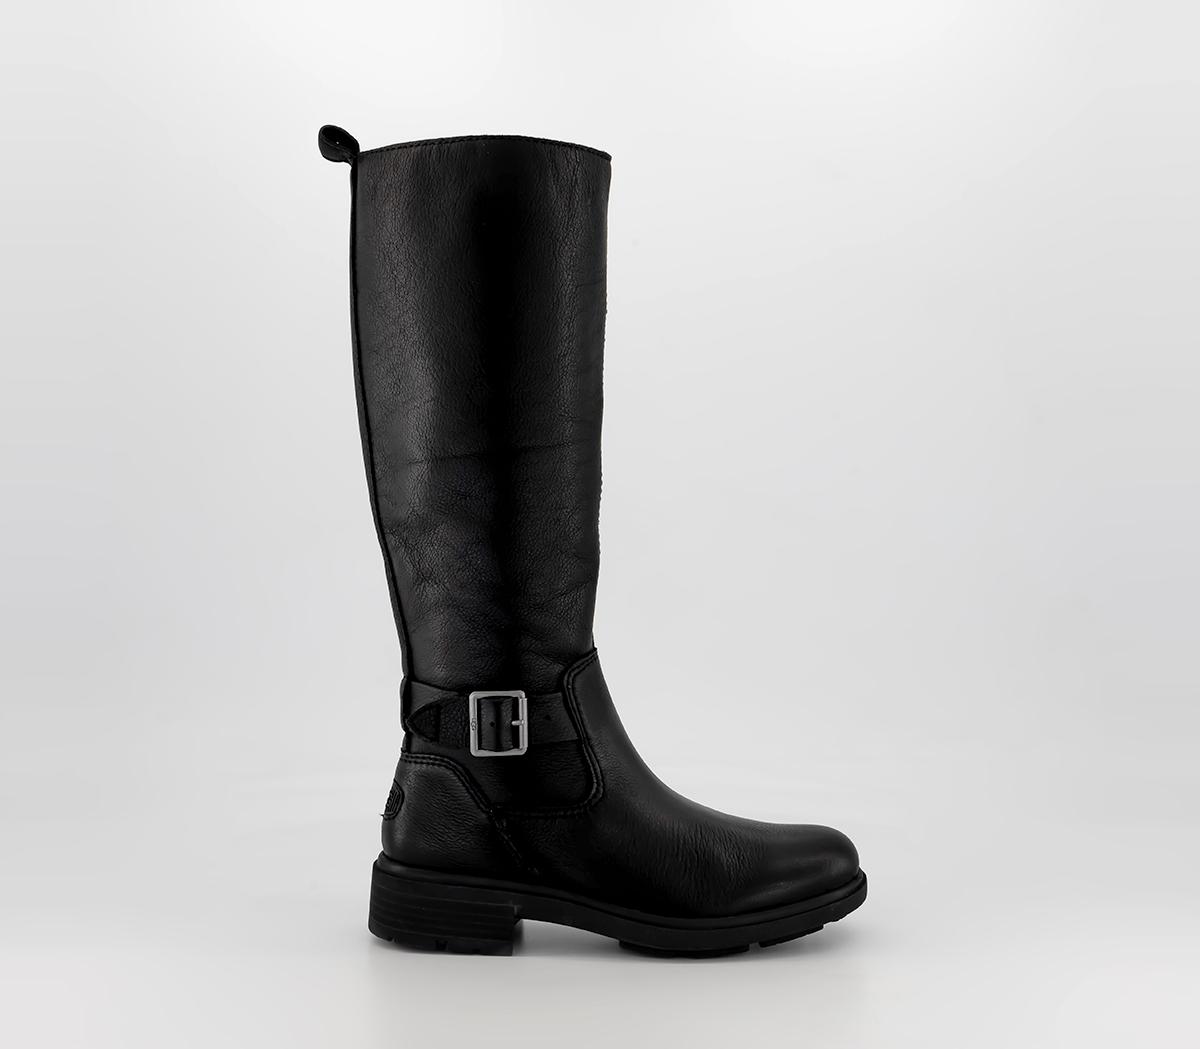 Ladies Harrison Tall Waterproof Boot in Black